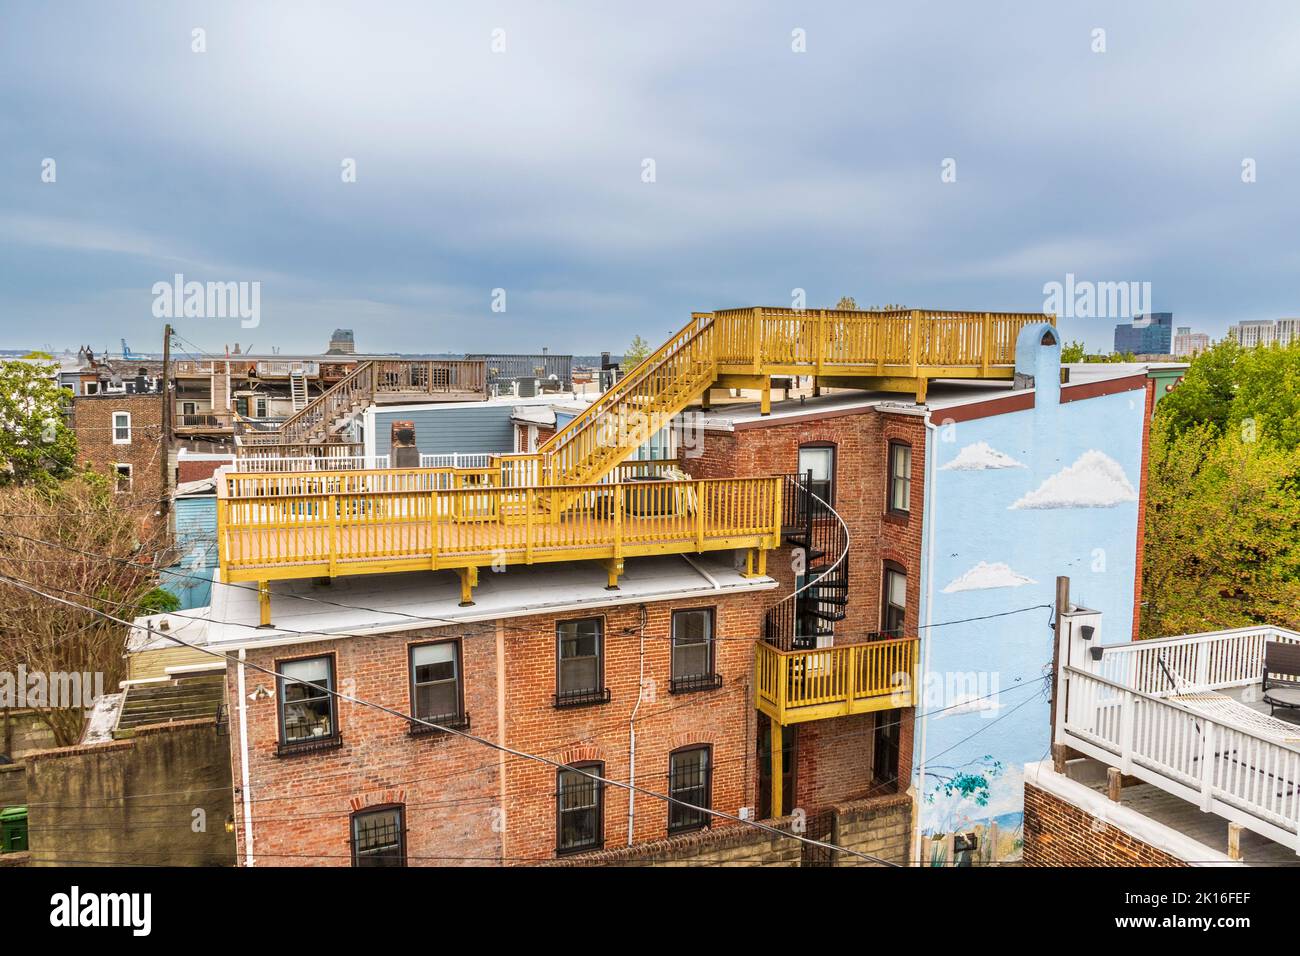 Baltimore, Maryland, berühmte Reihenhäuser werden oft mit Dachterrassen gekrönt, während junge Profis in diese historischen Häuser strömen. Stockfoto